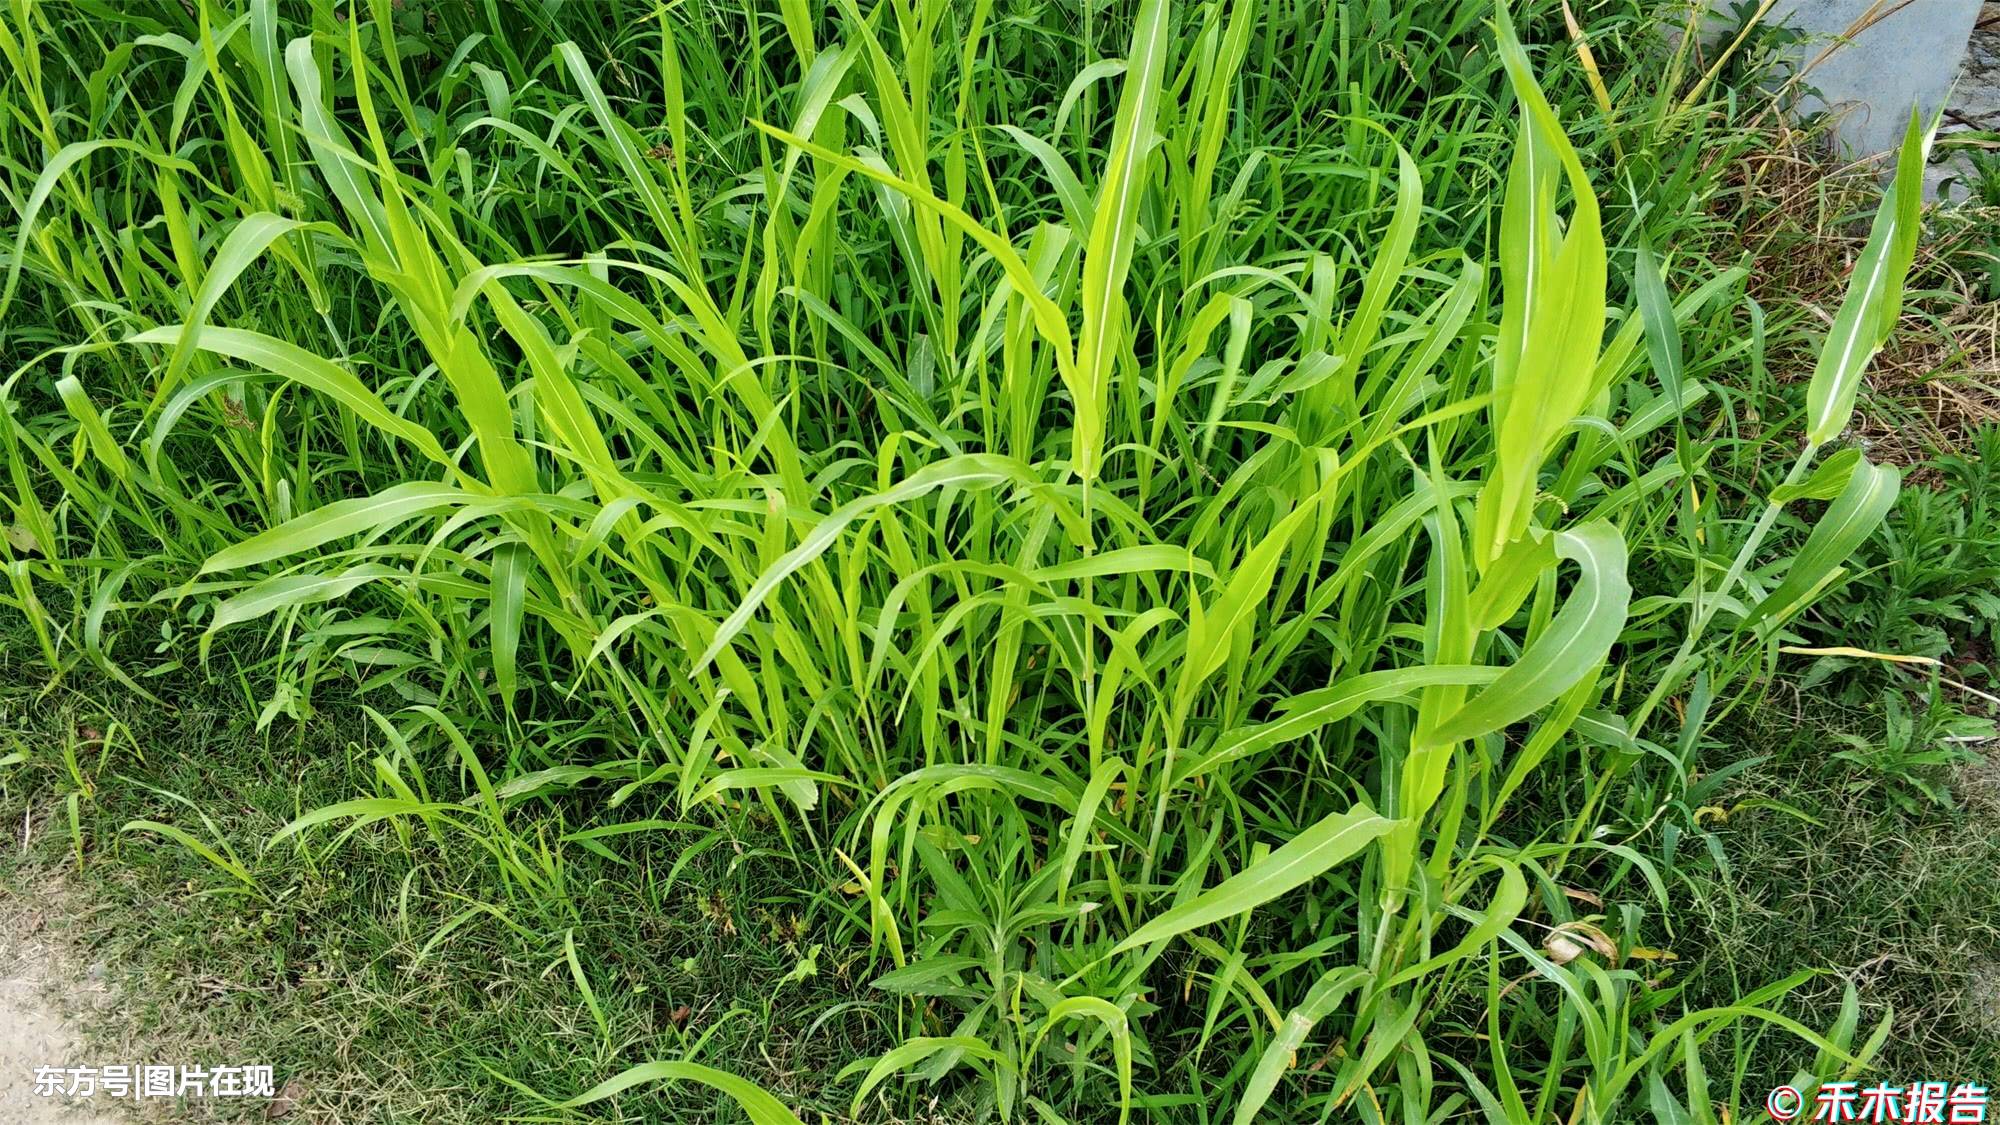 农村一野草,根长达12米,农民称它草中皇帝,茎是难得美味